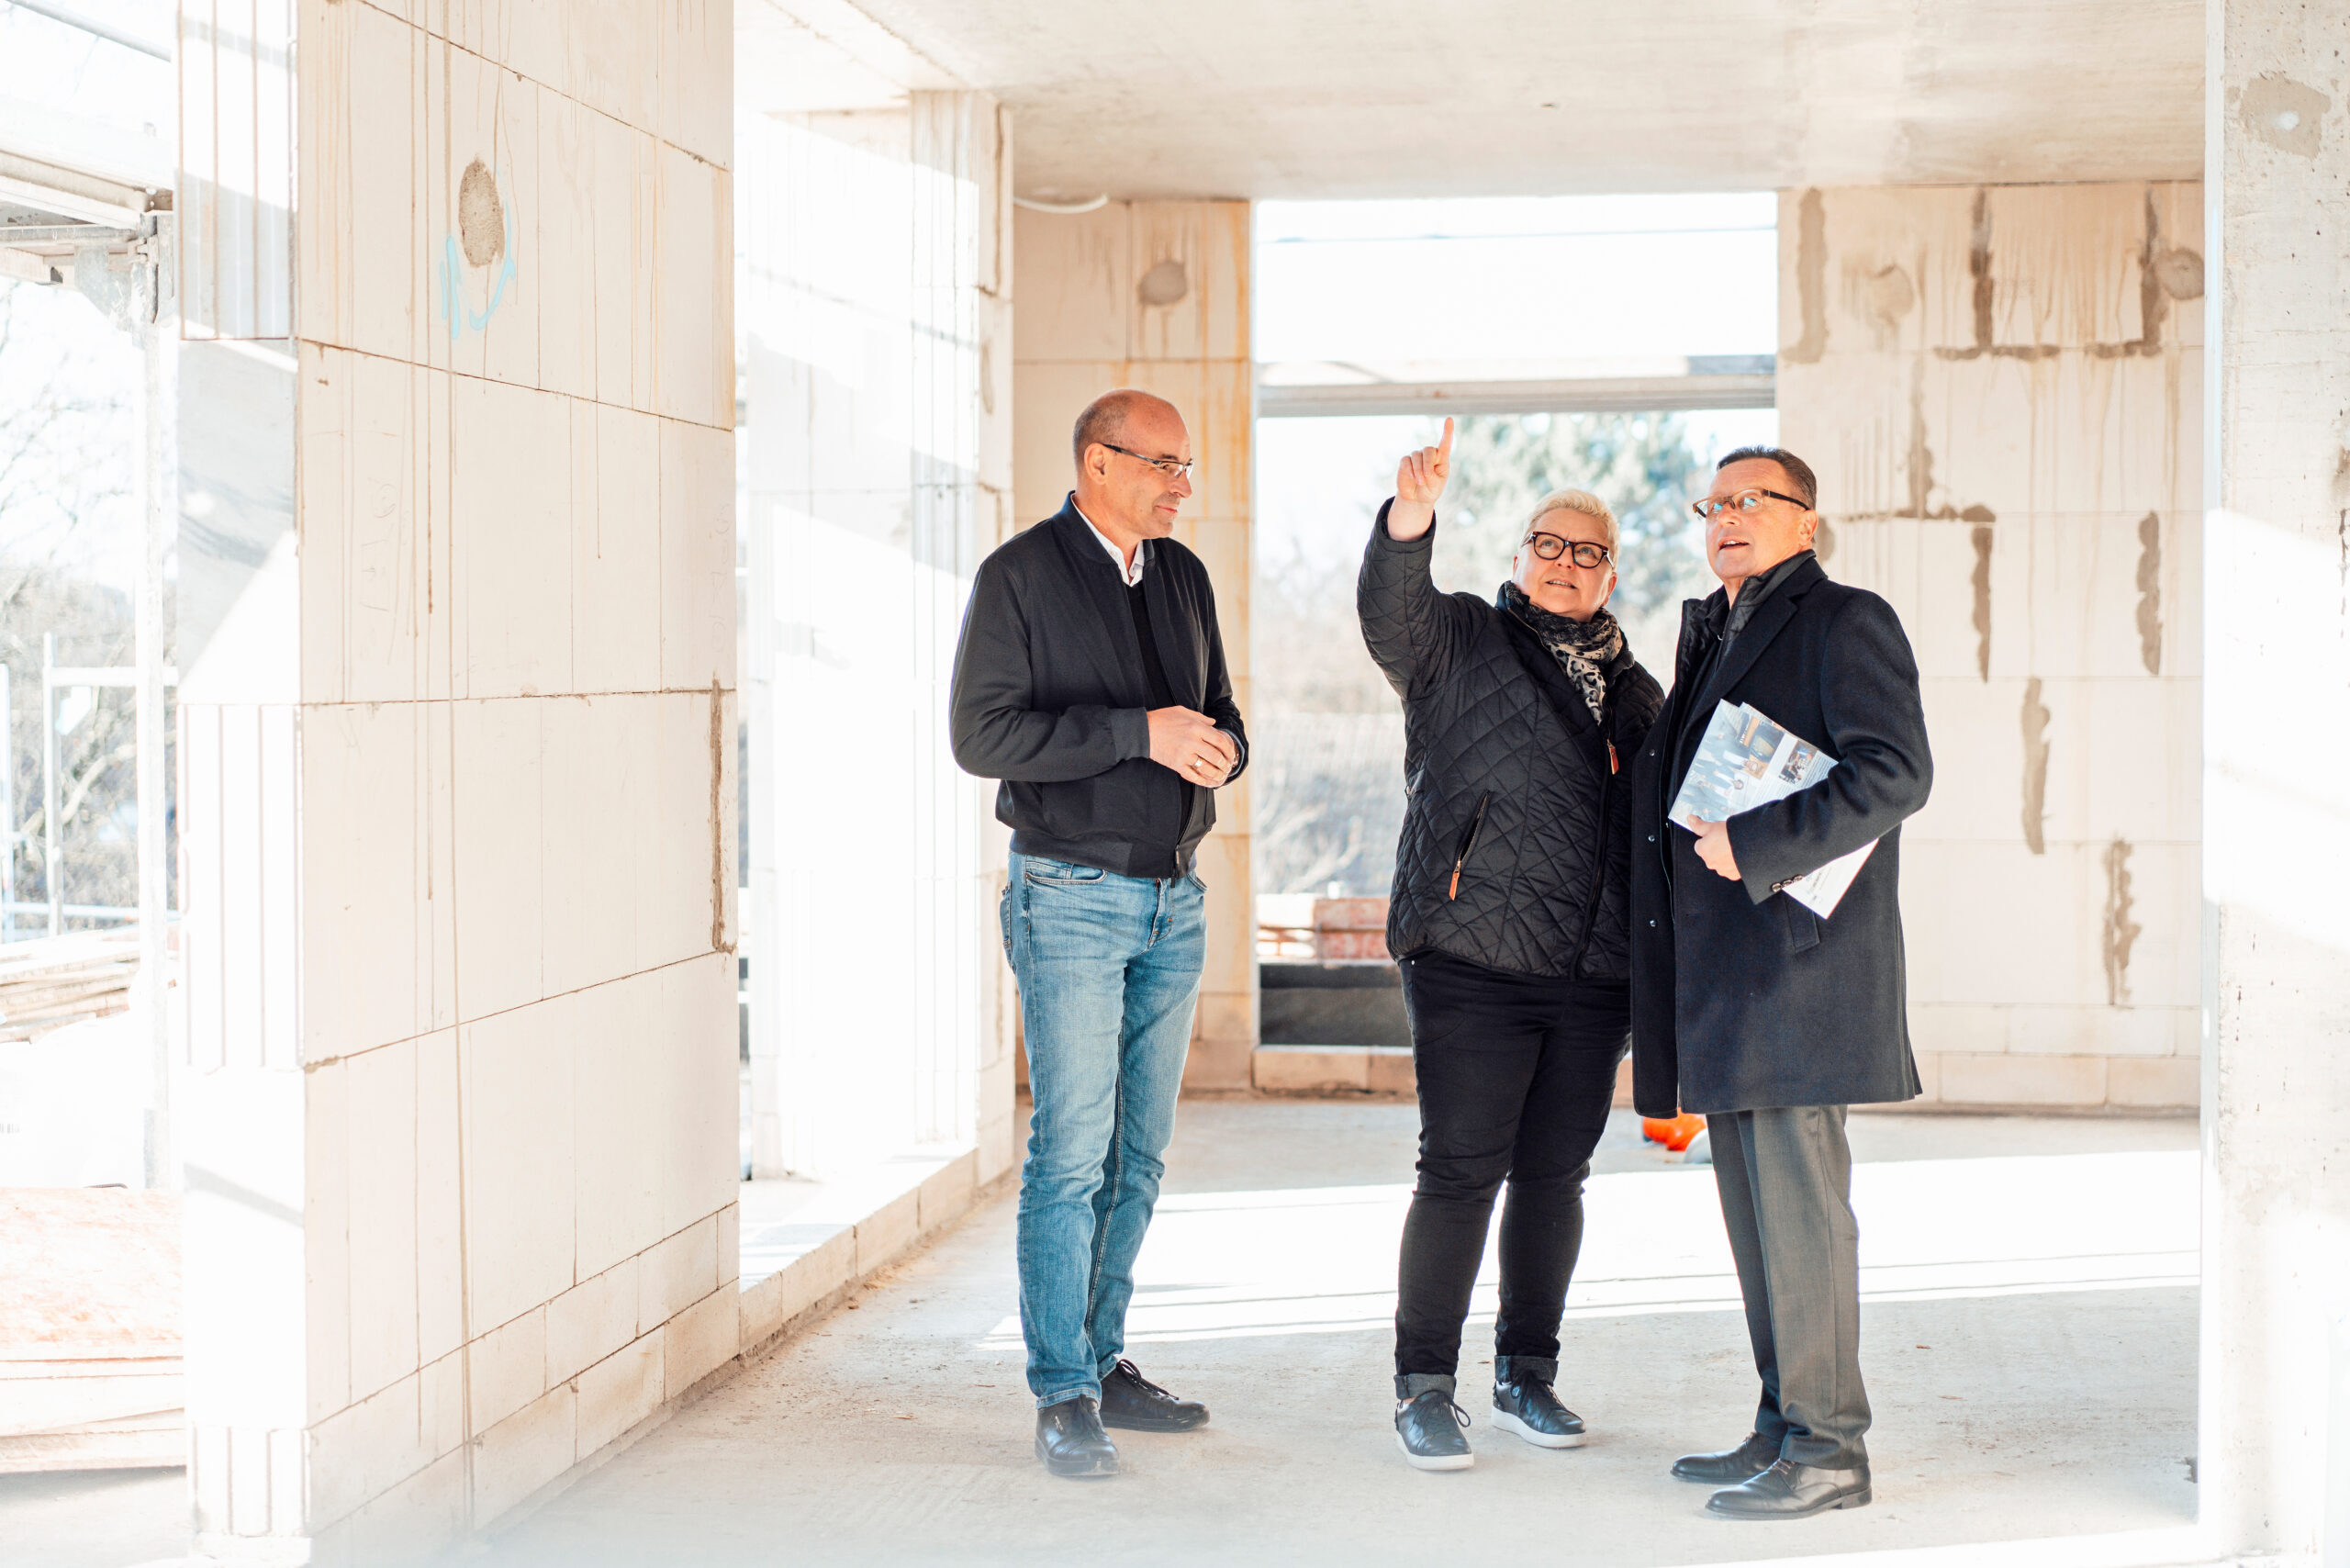 Architekt Joachim Kneutgen, Wohnungsbesitzerin Beate Schlich und Investor Eric Schütz (v.l.n.r.) beim Baustellengespräch – der Rohbau steht, im Sommer möchte Beate Schlich einziehen.